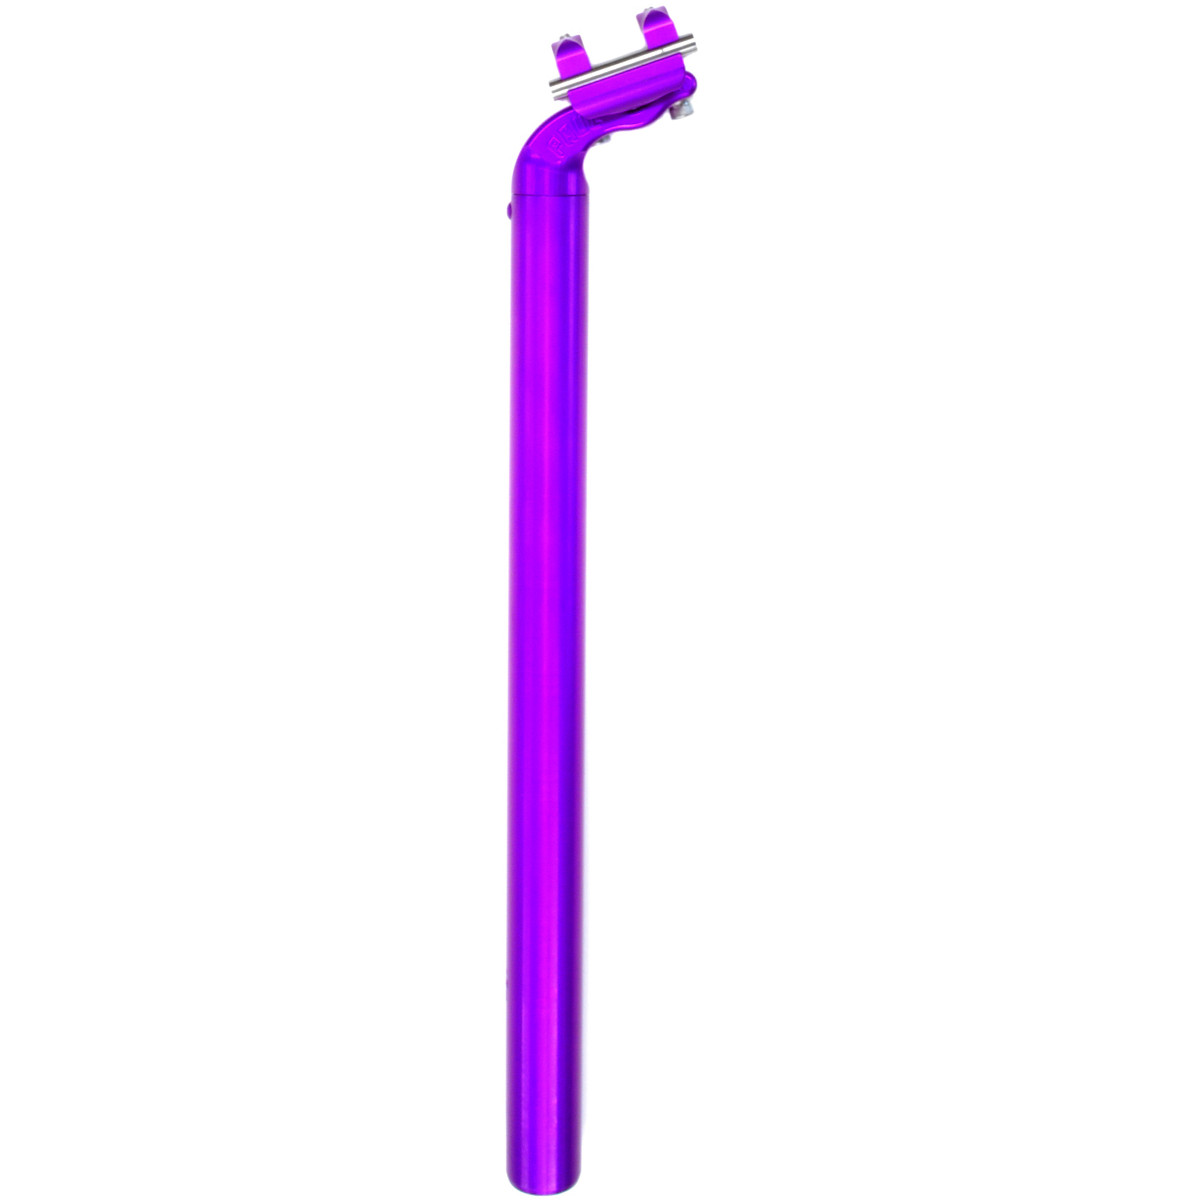 Produktbild von Paul Component Tall &amp; Handsome Sattelstütze - 27.2mm - purple